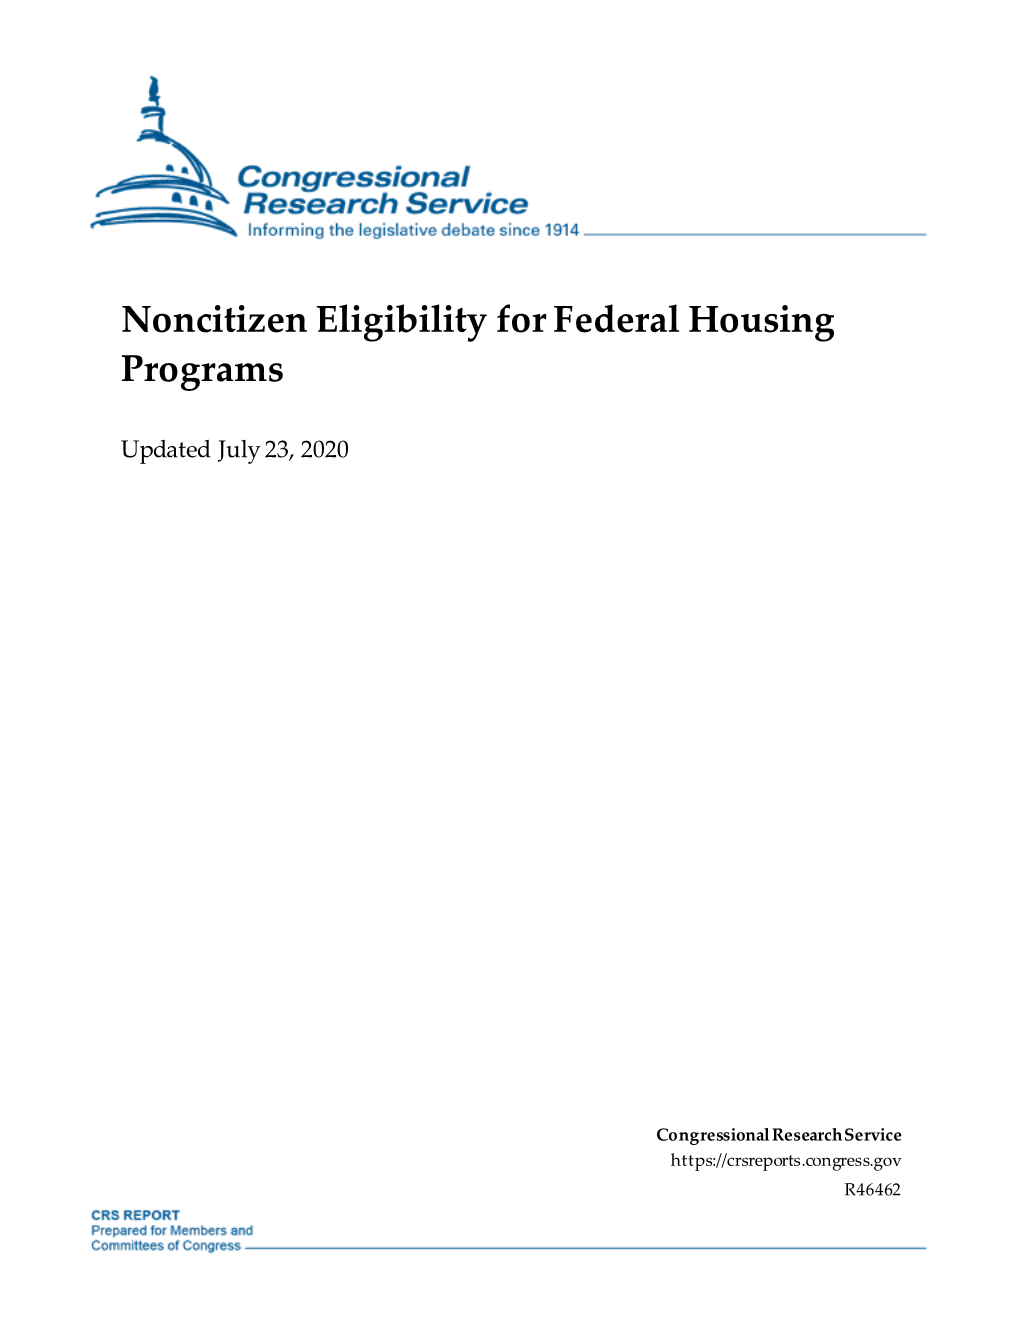 Noncitizen Eligibility for Federal Housing Programs